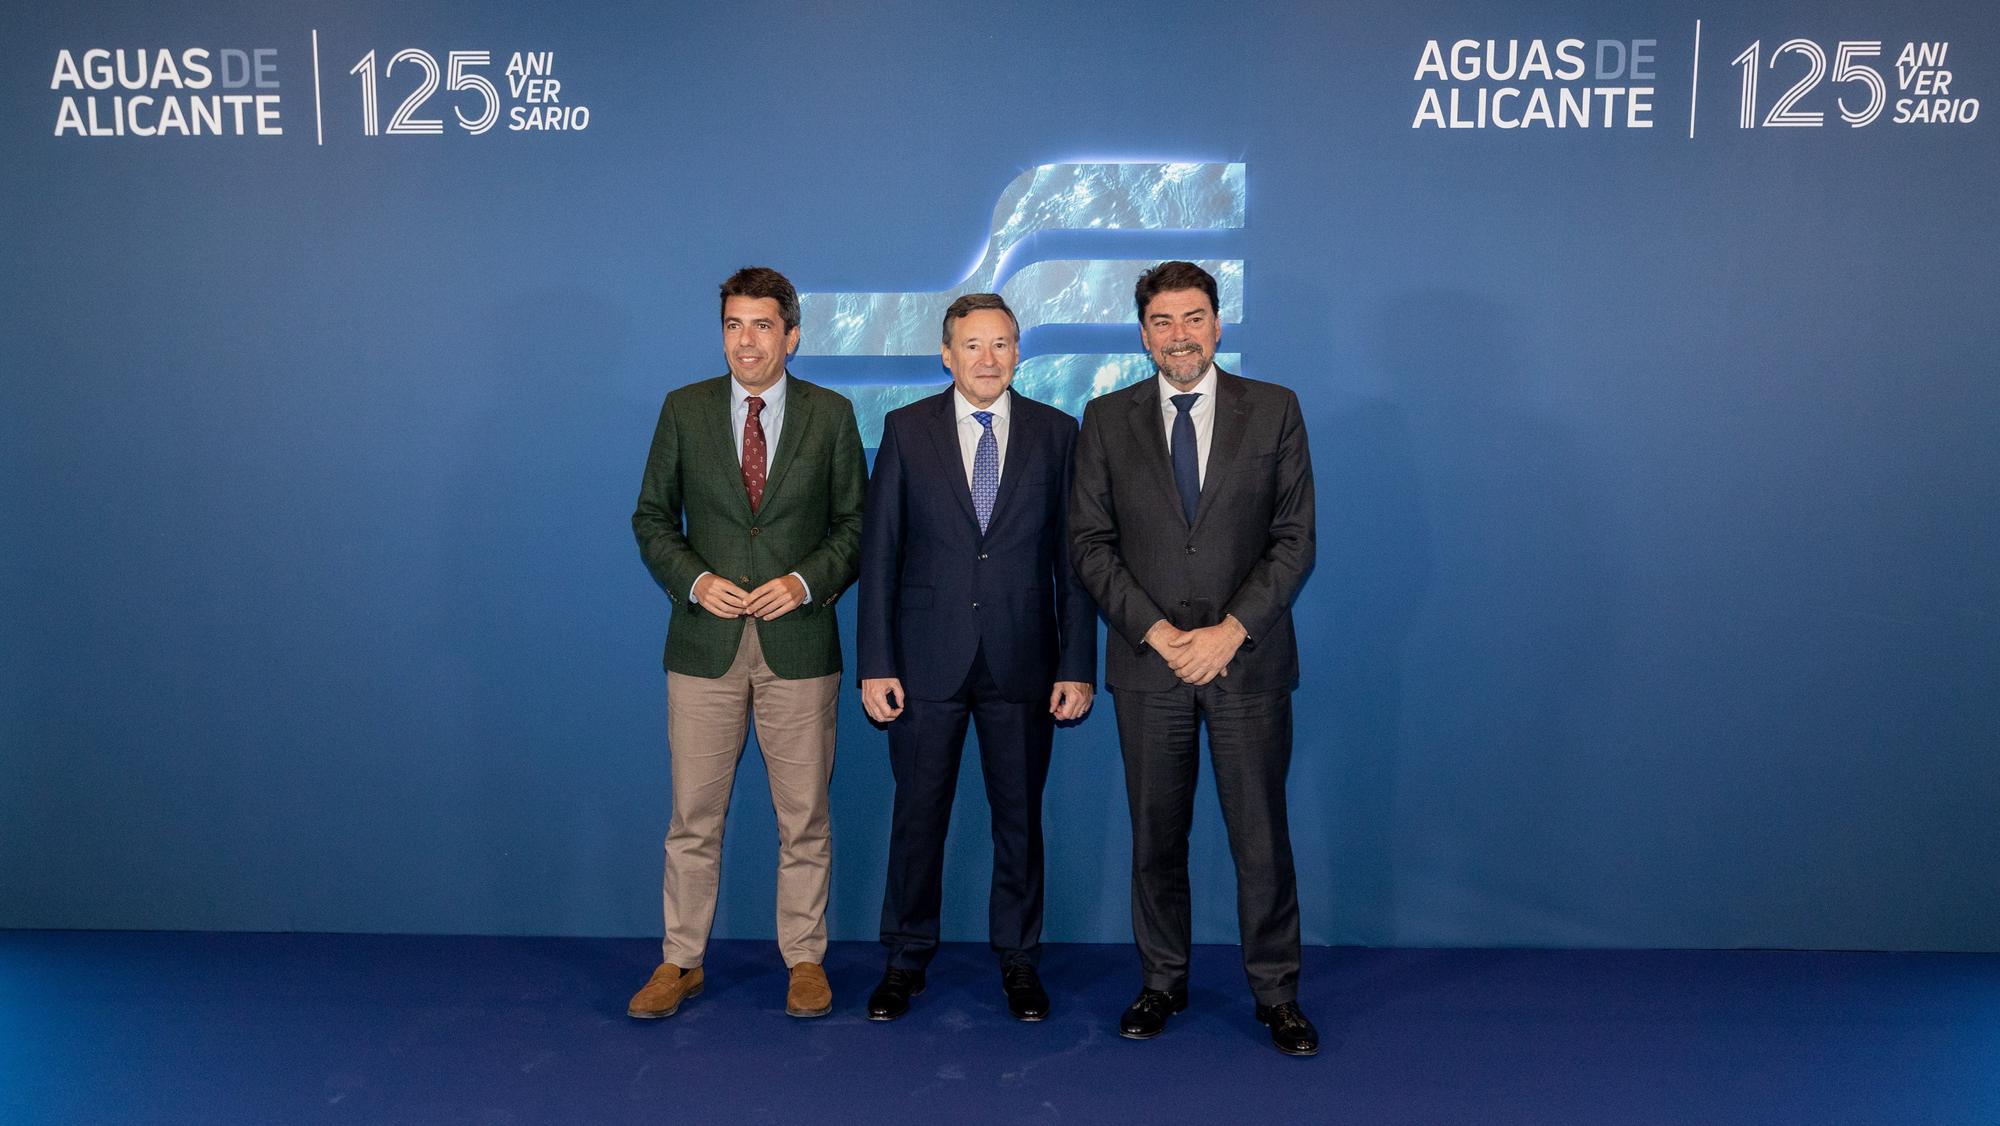 Aguas de Alicante, primera empresa de la Comunidad Valenciana en presentar su identidad corporativa en el metaverso